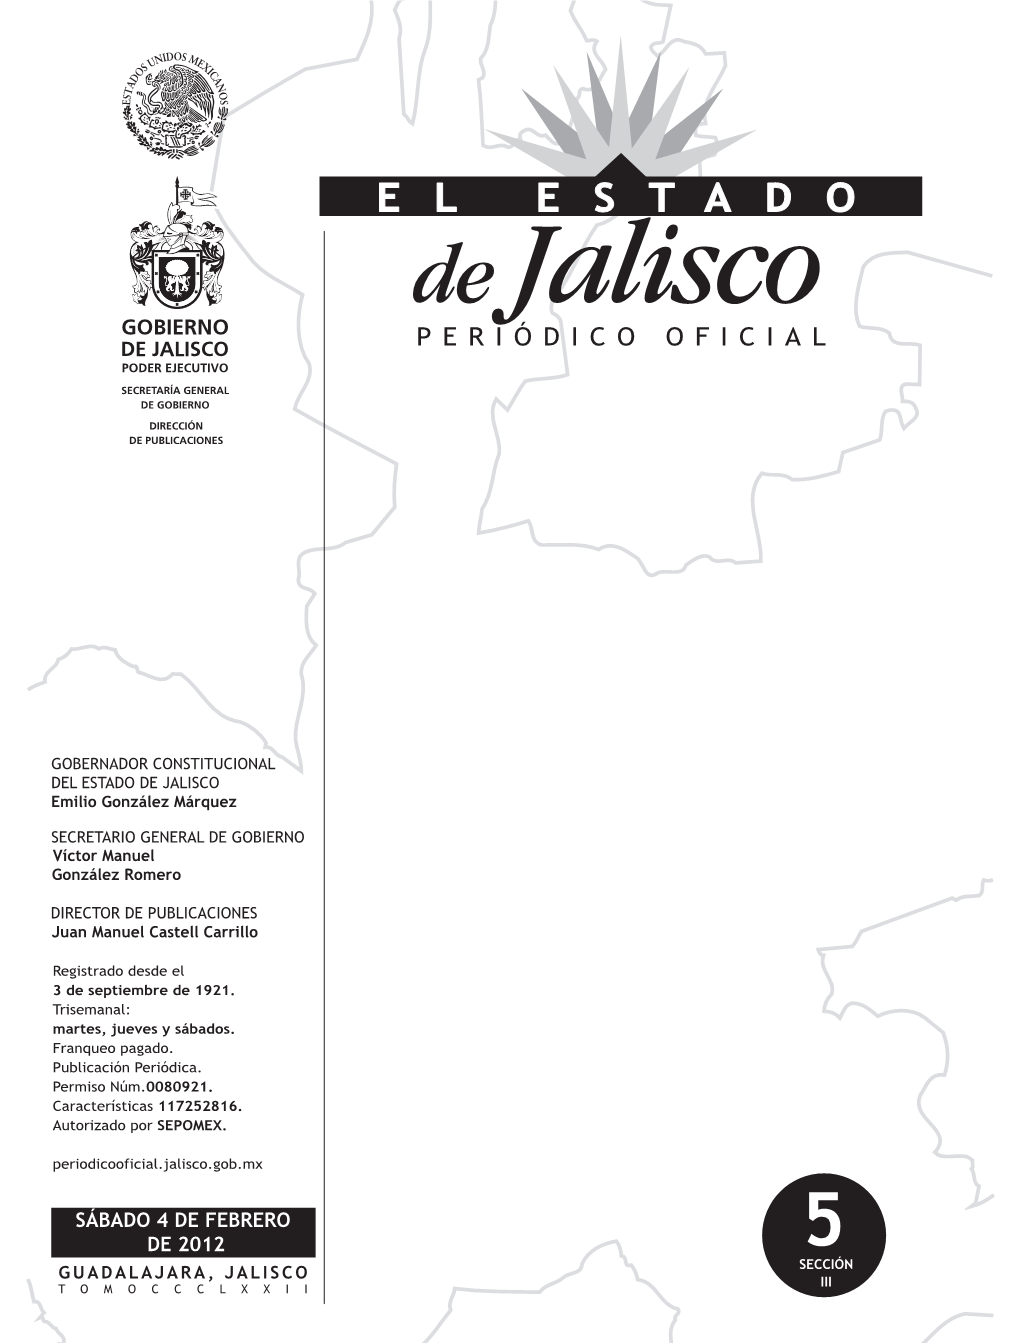 SÁBADO 4 DE FEBRERO DE 2012 5 GUADALAJARA, JALISCO SECCIÓN III TOMOCCCLXXII Programa Subregional De Desarrollo Turístico Costalegre, Estado De Jalisco 3